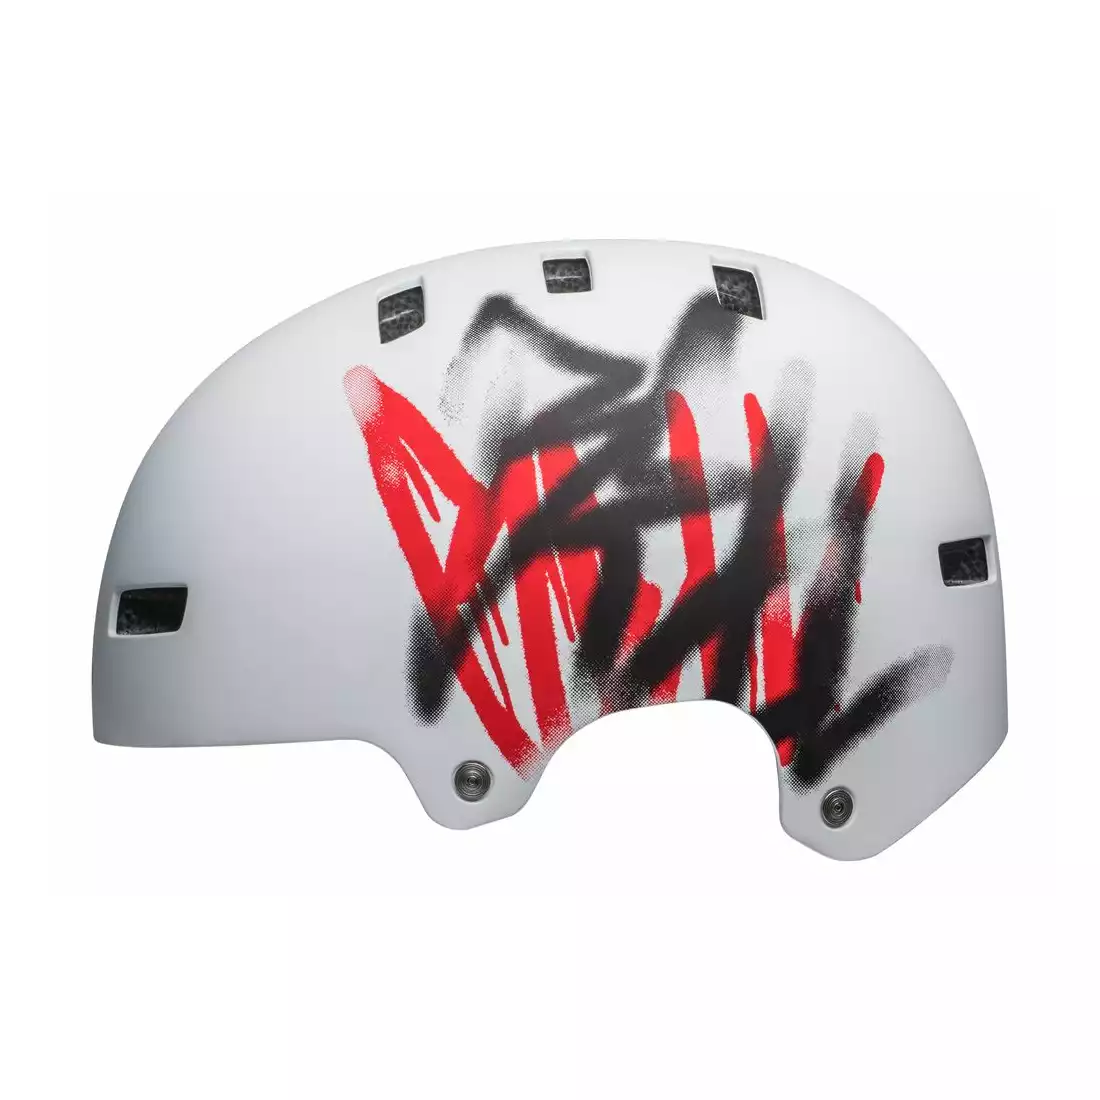 BELL LOCAL bmx helmet, scribble, white